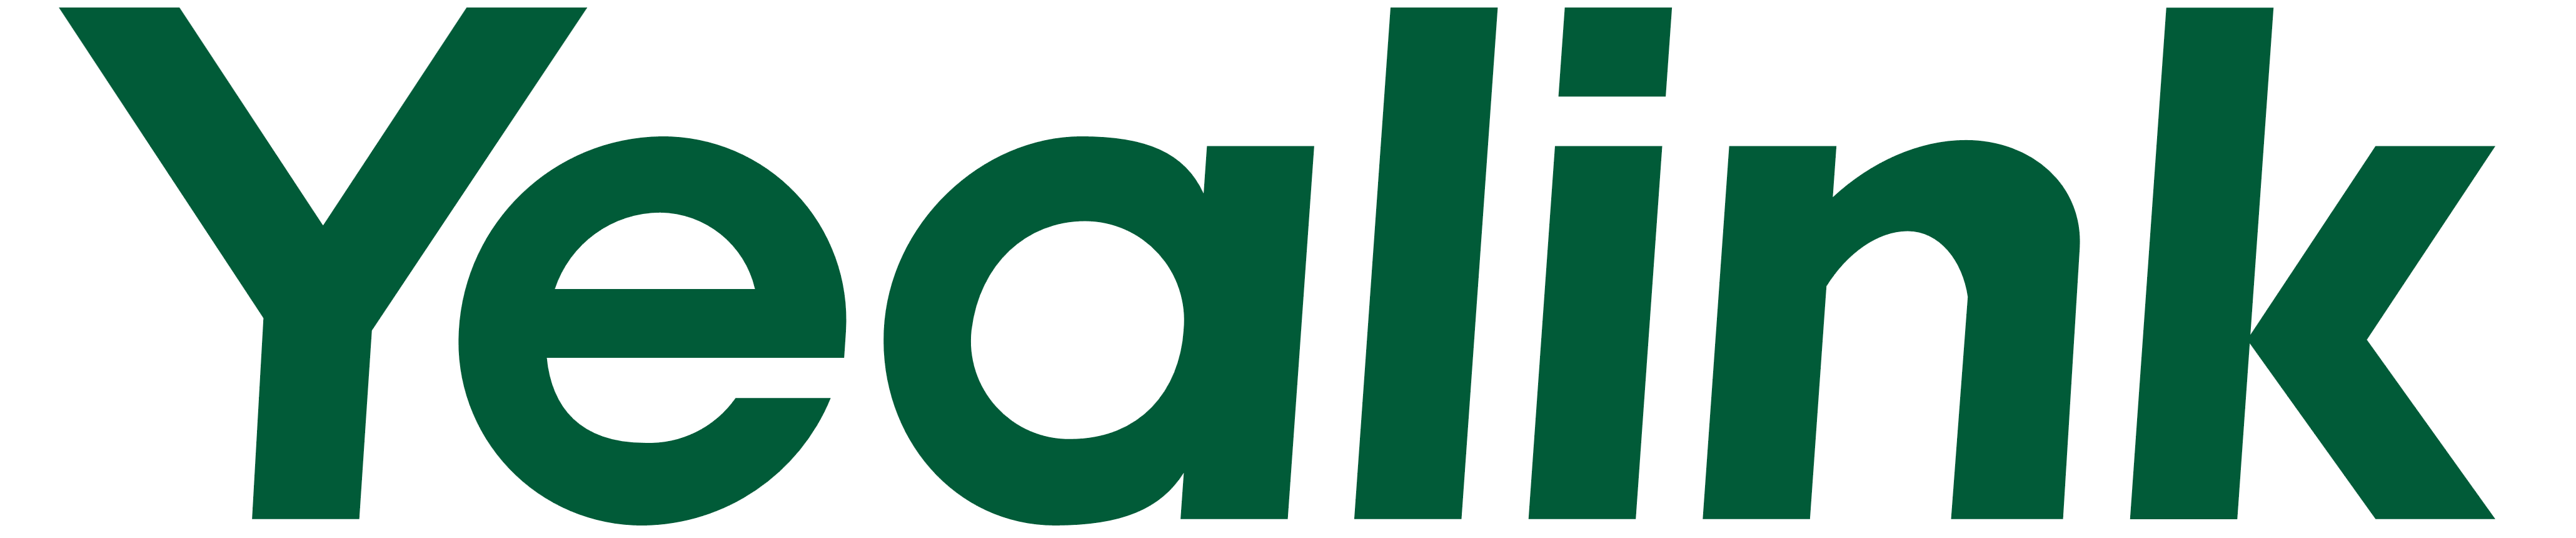 Yealink_logo_logotype